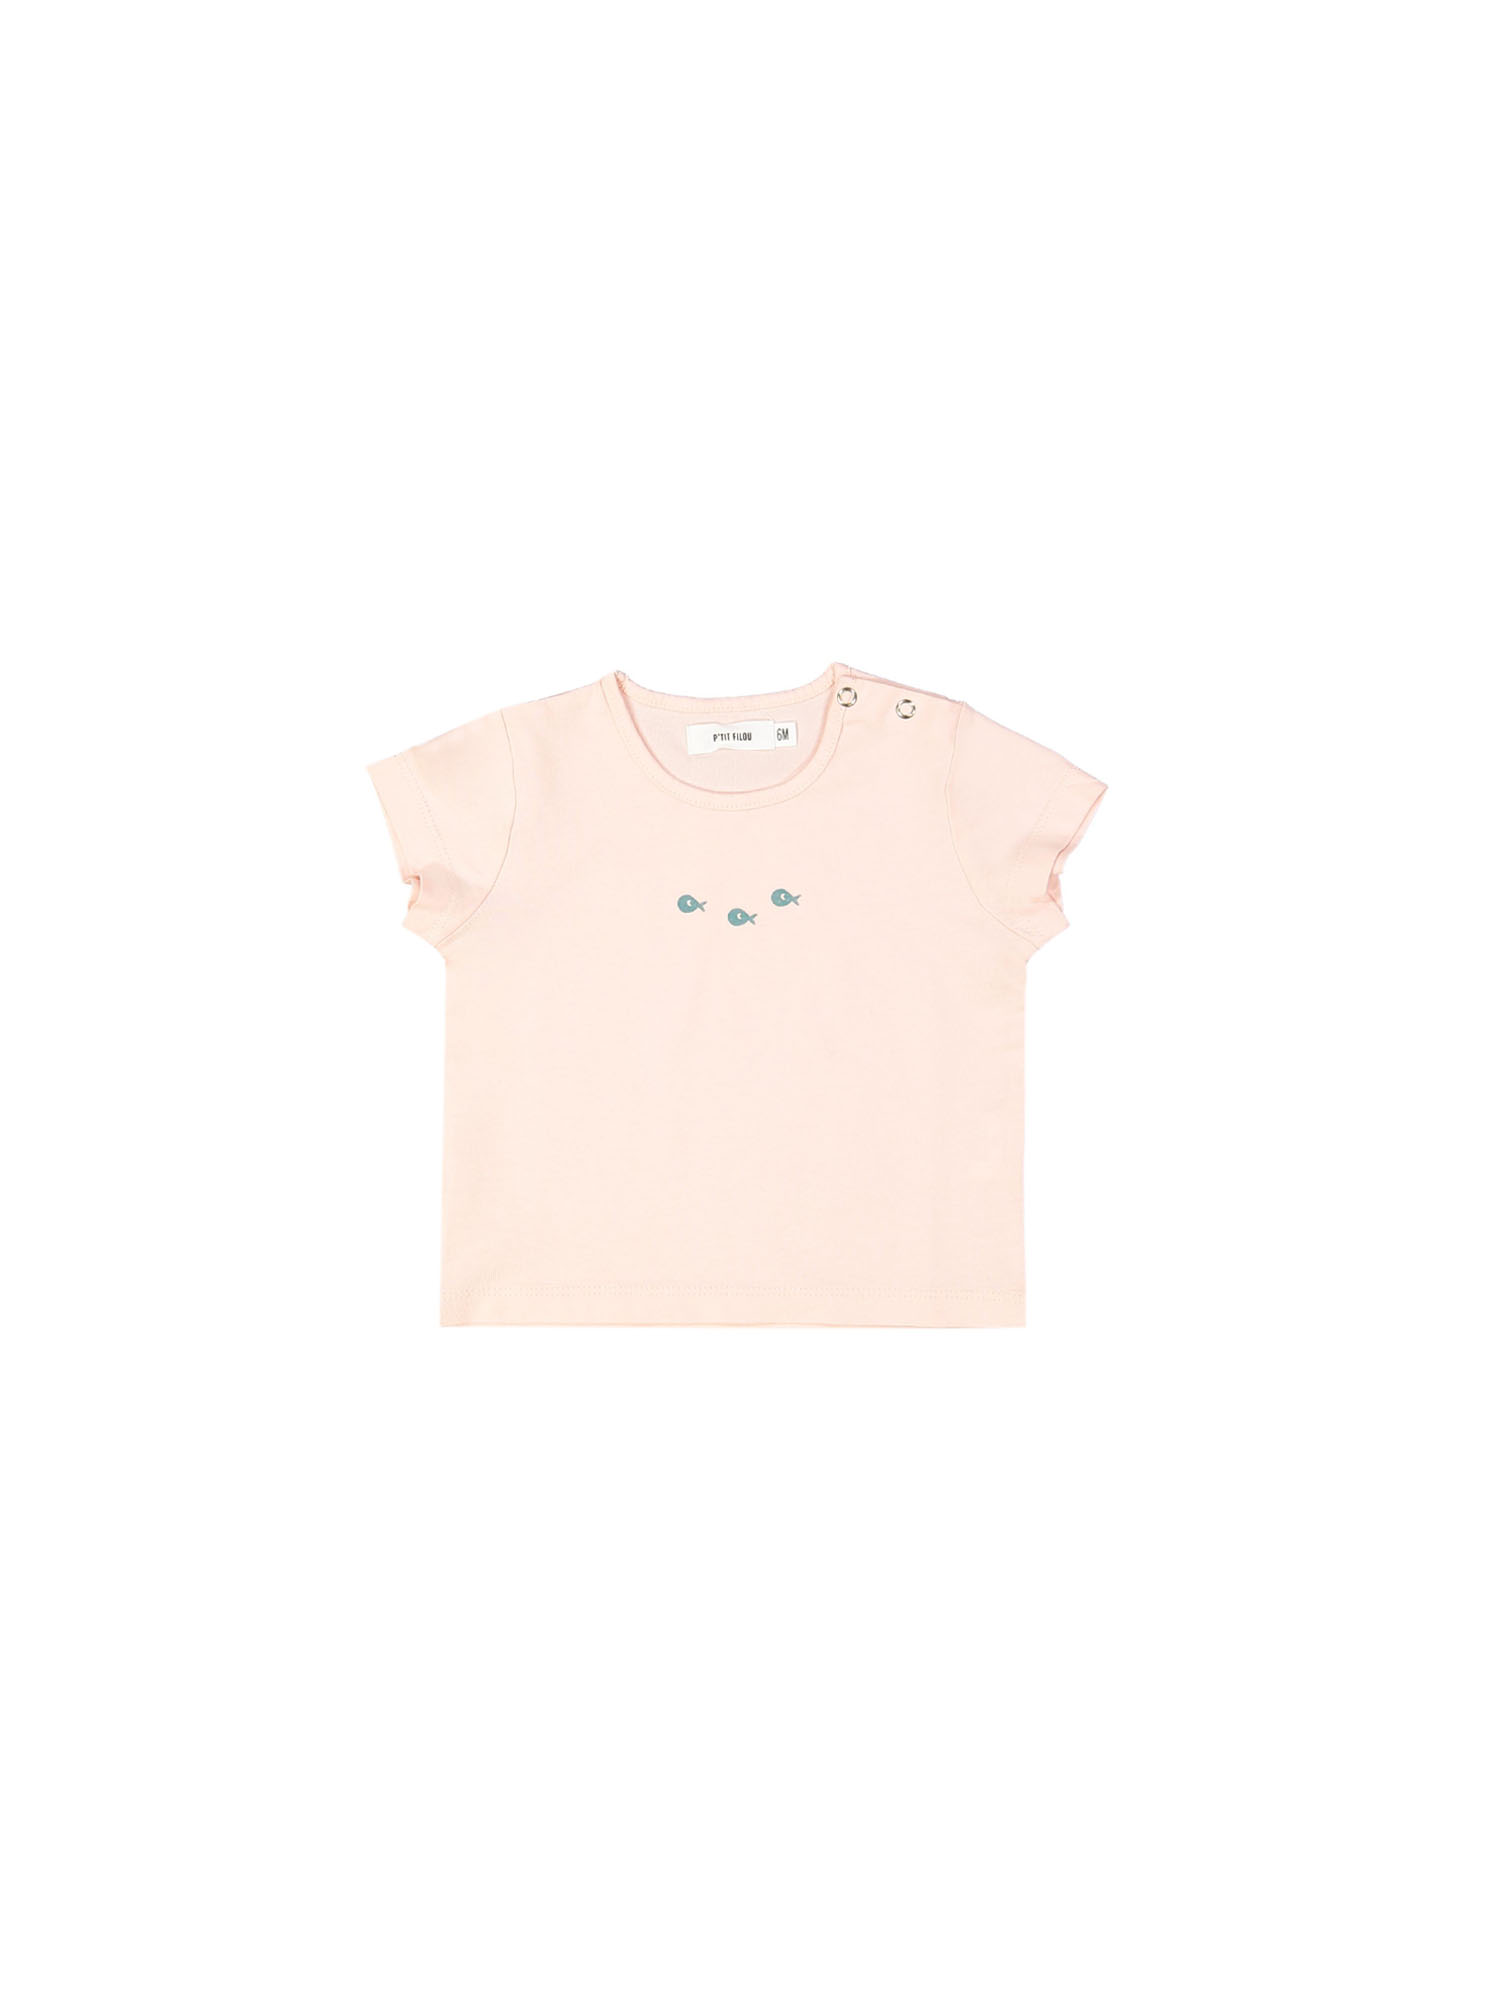 t-shirt mini poisson d'école rose clair